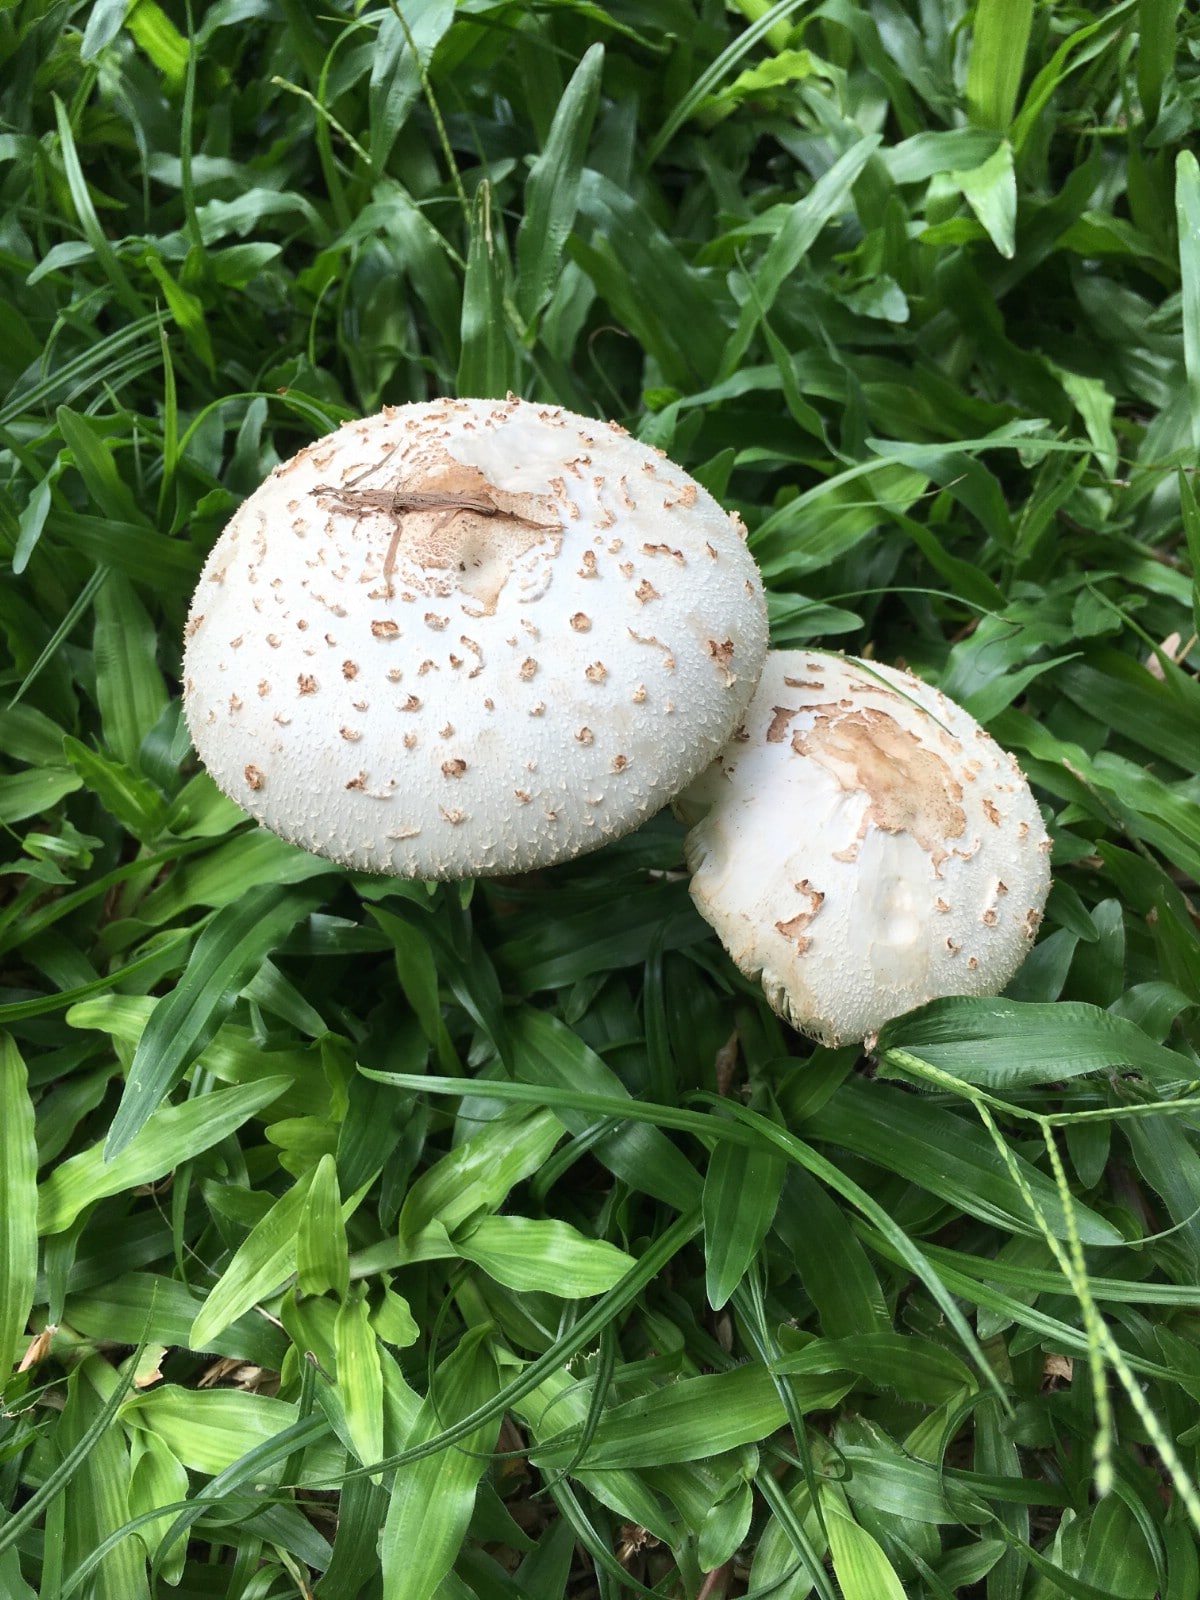 green parasol mushroom in grass